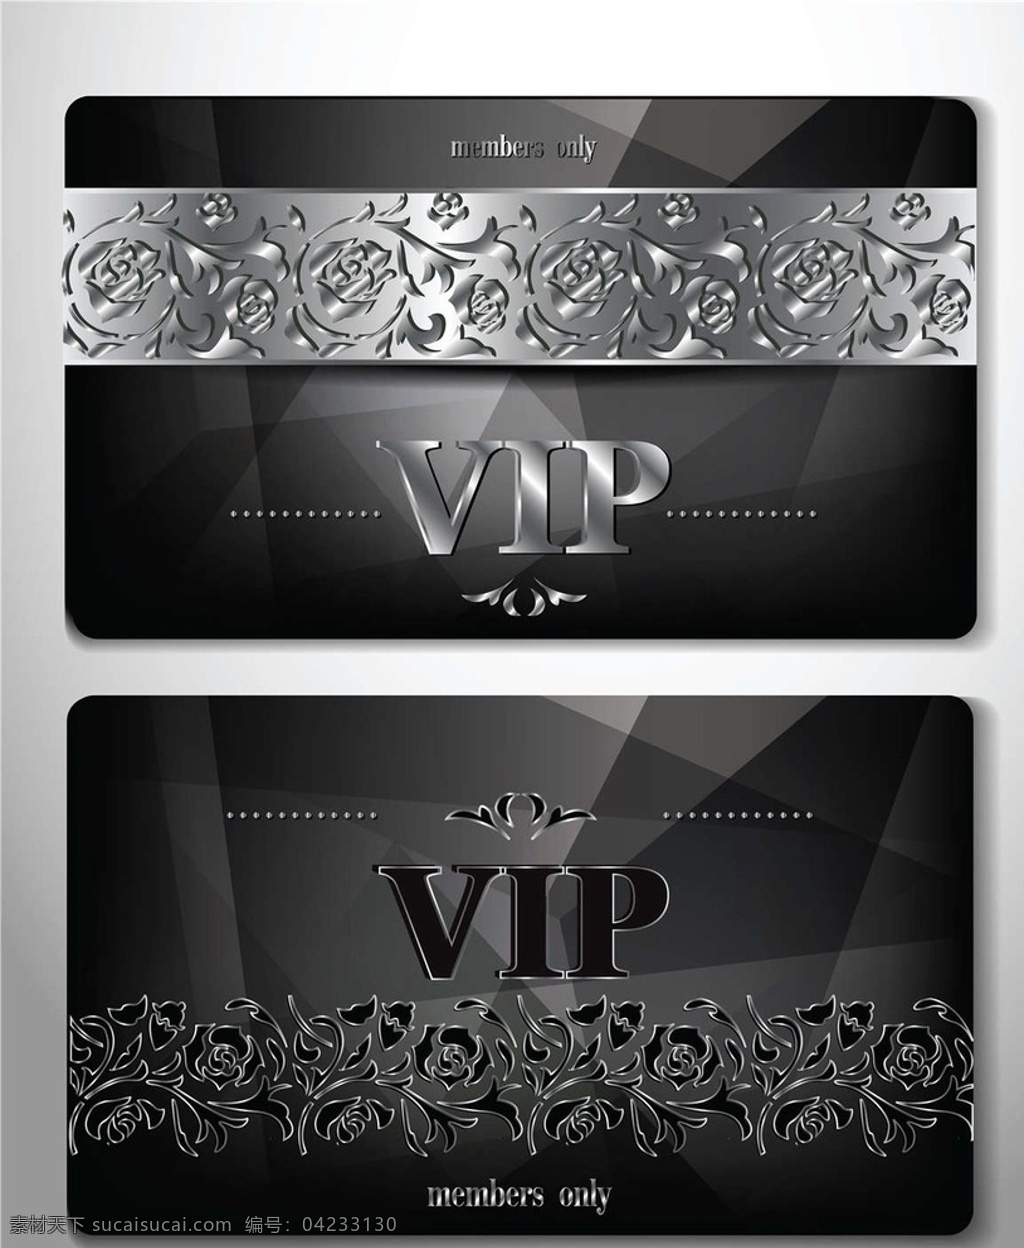 vip 卡 会员卡 vip图标 vip标志 vip标识 vip卡 贵宾卡 金卡 高级会员 卡片设计 卡片模板 vip徽章 vip会员 资深会员 重要会员 钻石会员 名片卡片